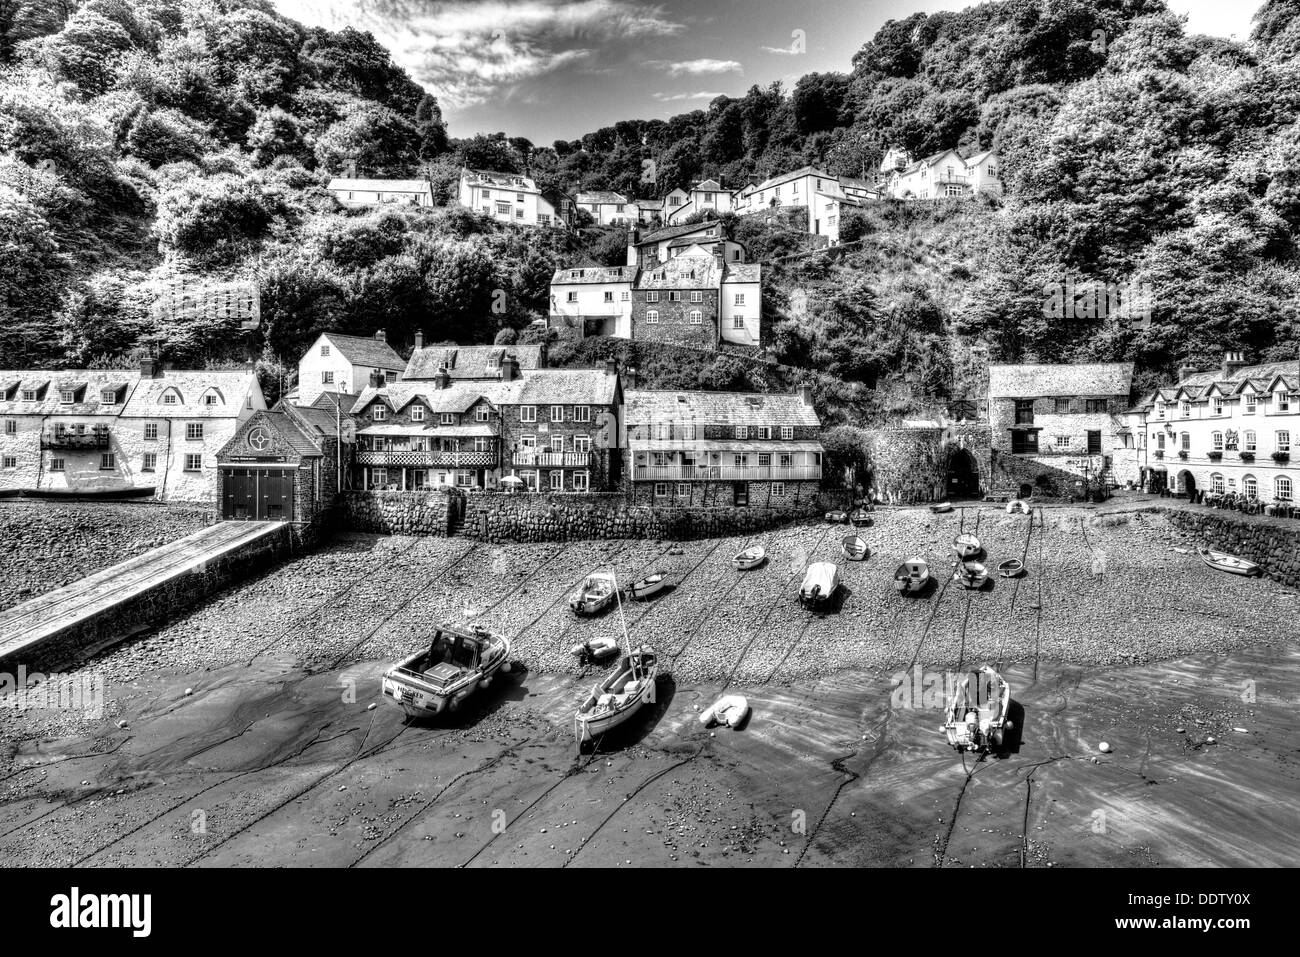 Marée basse, port de Clovelly Devon, Angleterre belle côte village et port en noir et blanc HDR Banque D'Images